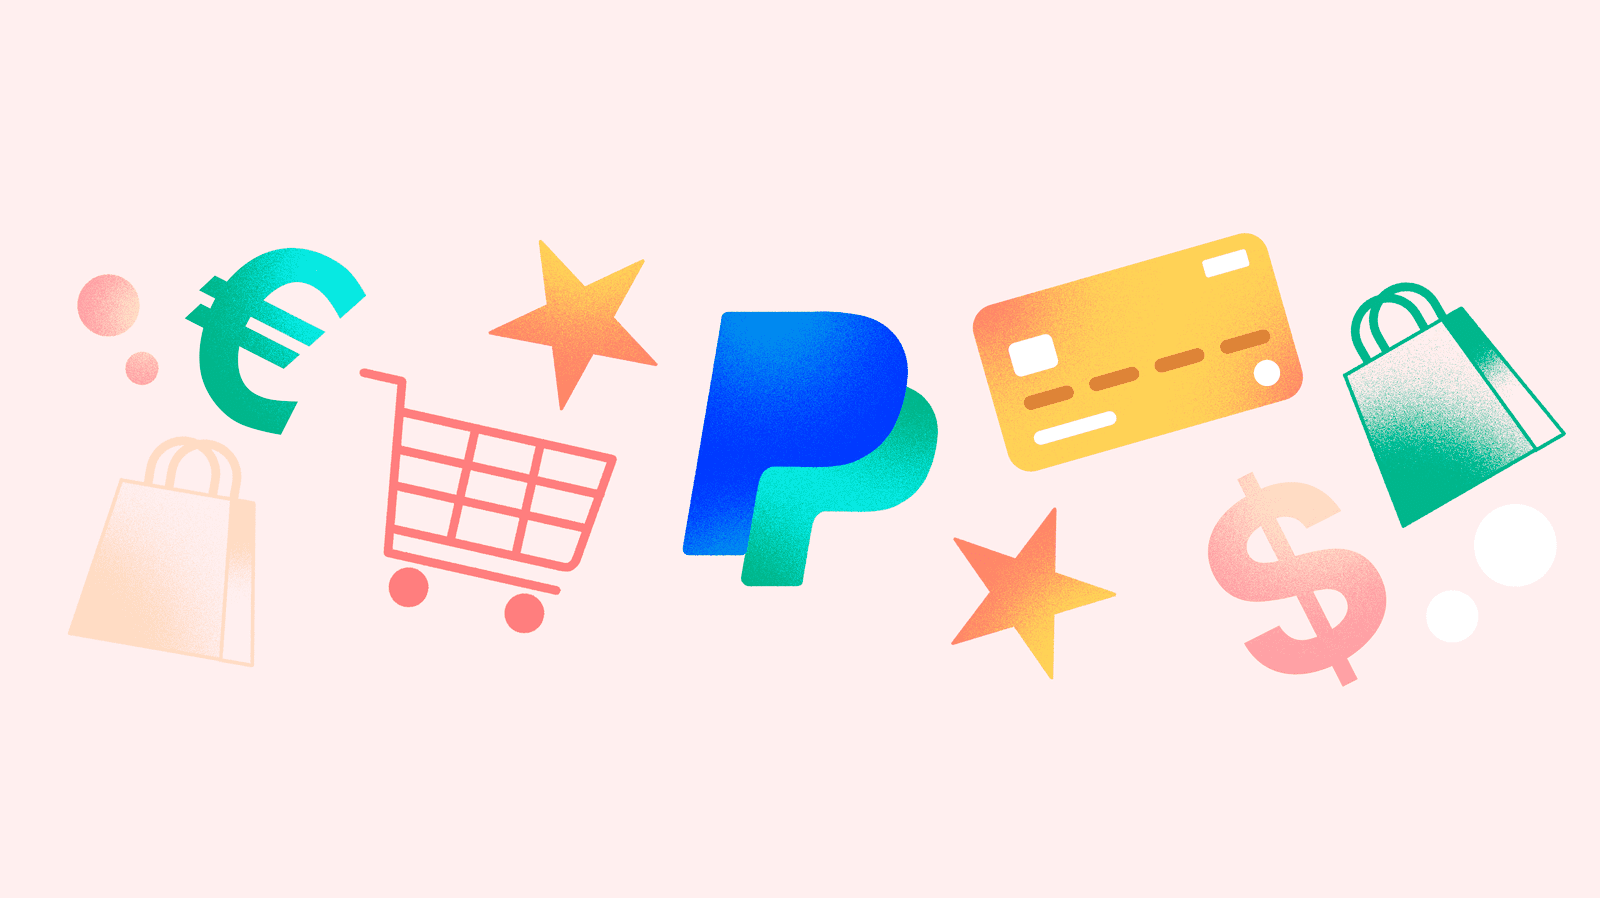 Sử dụng cổng thanh toán PayPal, bạn có thể thanh toán cho mọi thuật ngữ mà bạn cần một cách dễ dàng và tiện lợi. Bạn muốn hiểu rõ hơn về PayPal? Hãy xem qua các hình ảnh thú vị của chúng tôi để biết thêm chi tiết về dịch vụ hấp dẫn này.